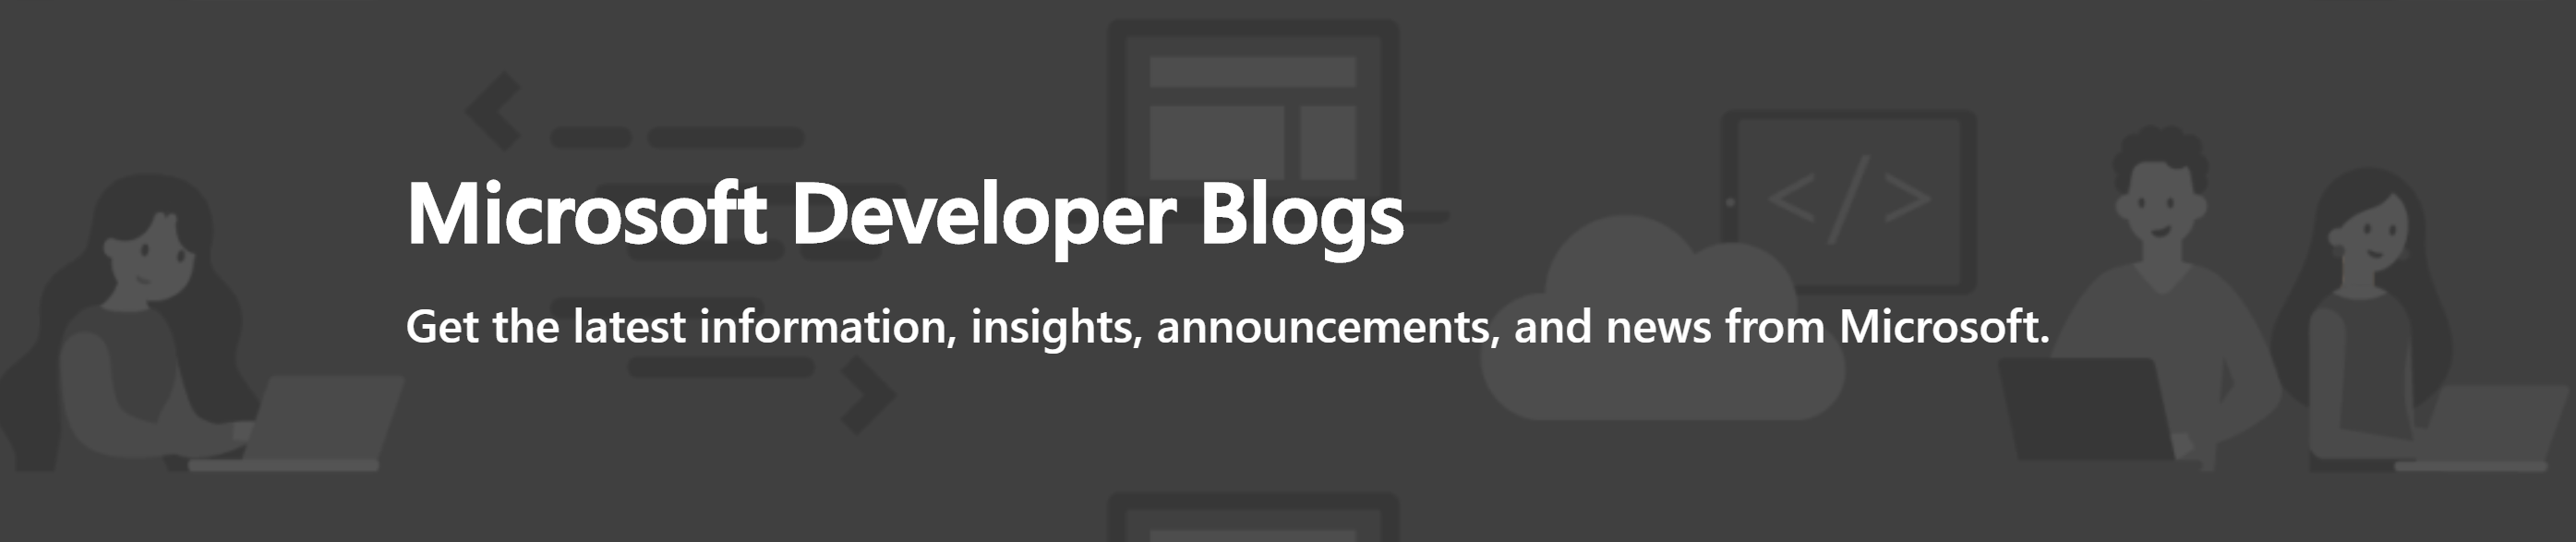 Microsoft Developer Blogs' banner.